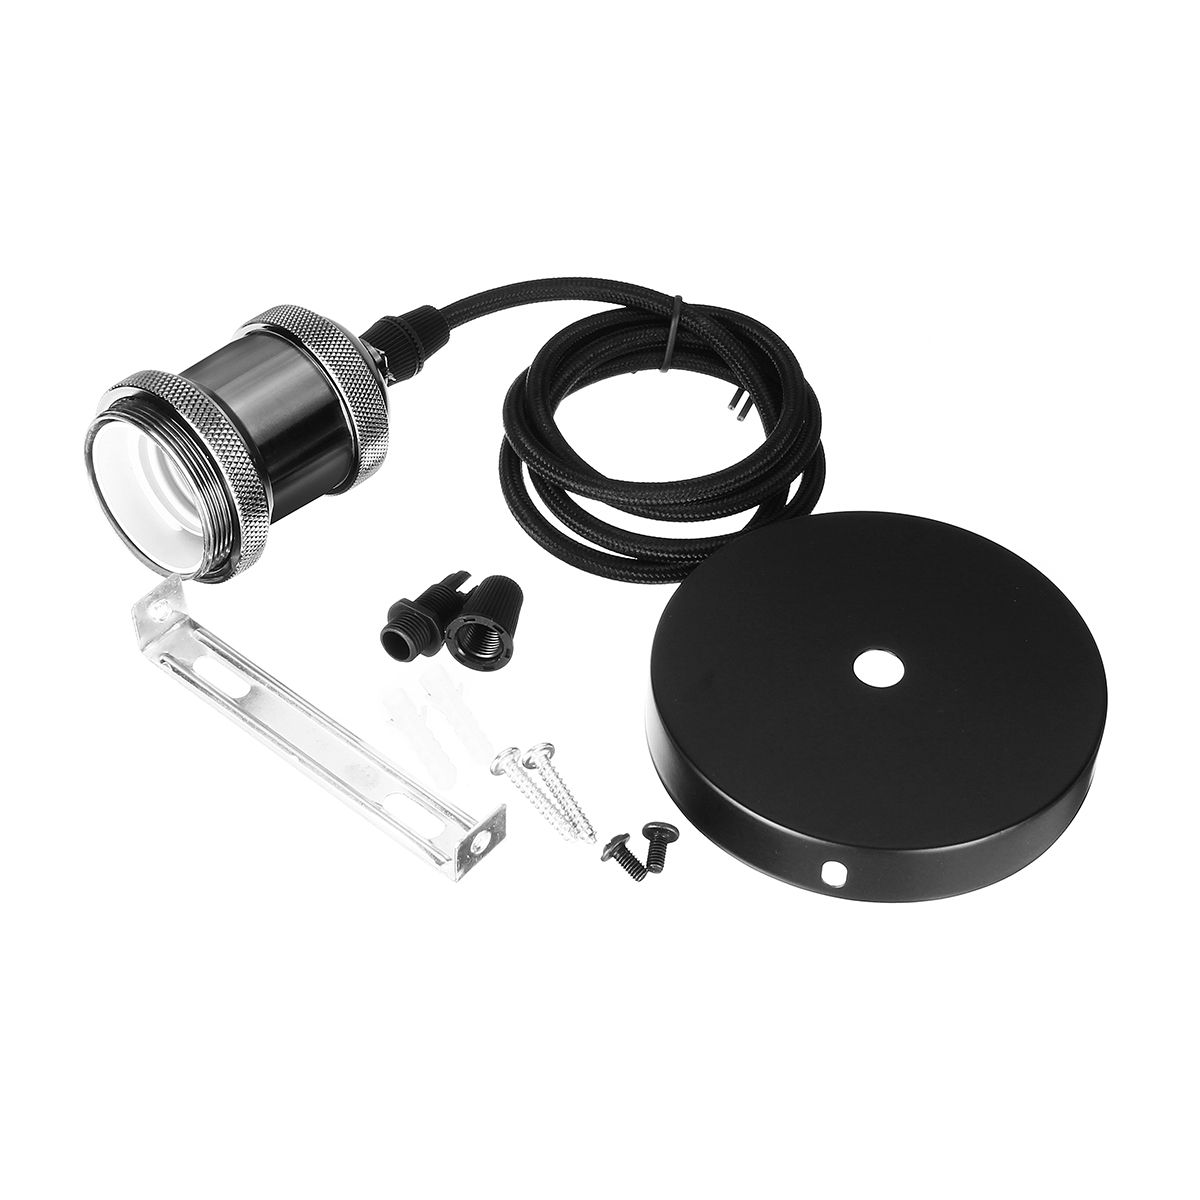 E27-Pendant-Light-Socket-Vintage-Edison-Lamp-Holder-Bulb-Adapter-for-Indoor-Use-AC110-220V-1450822